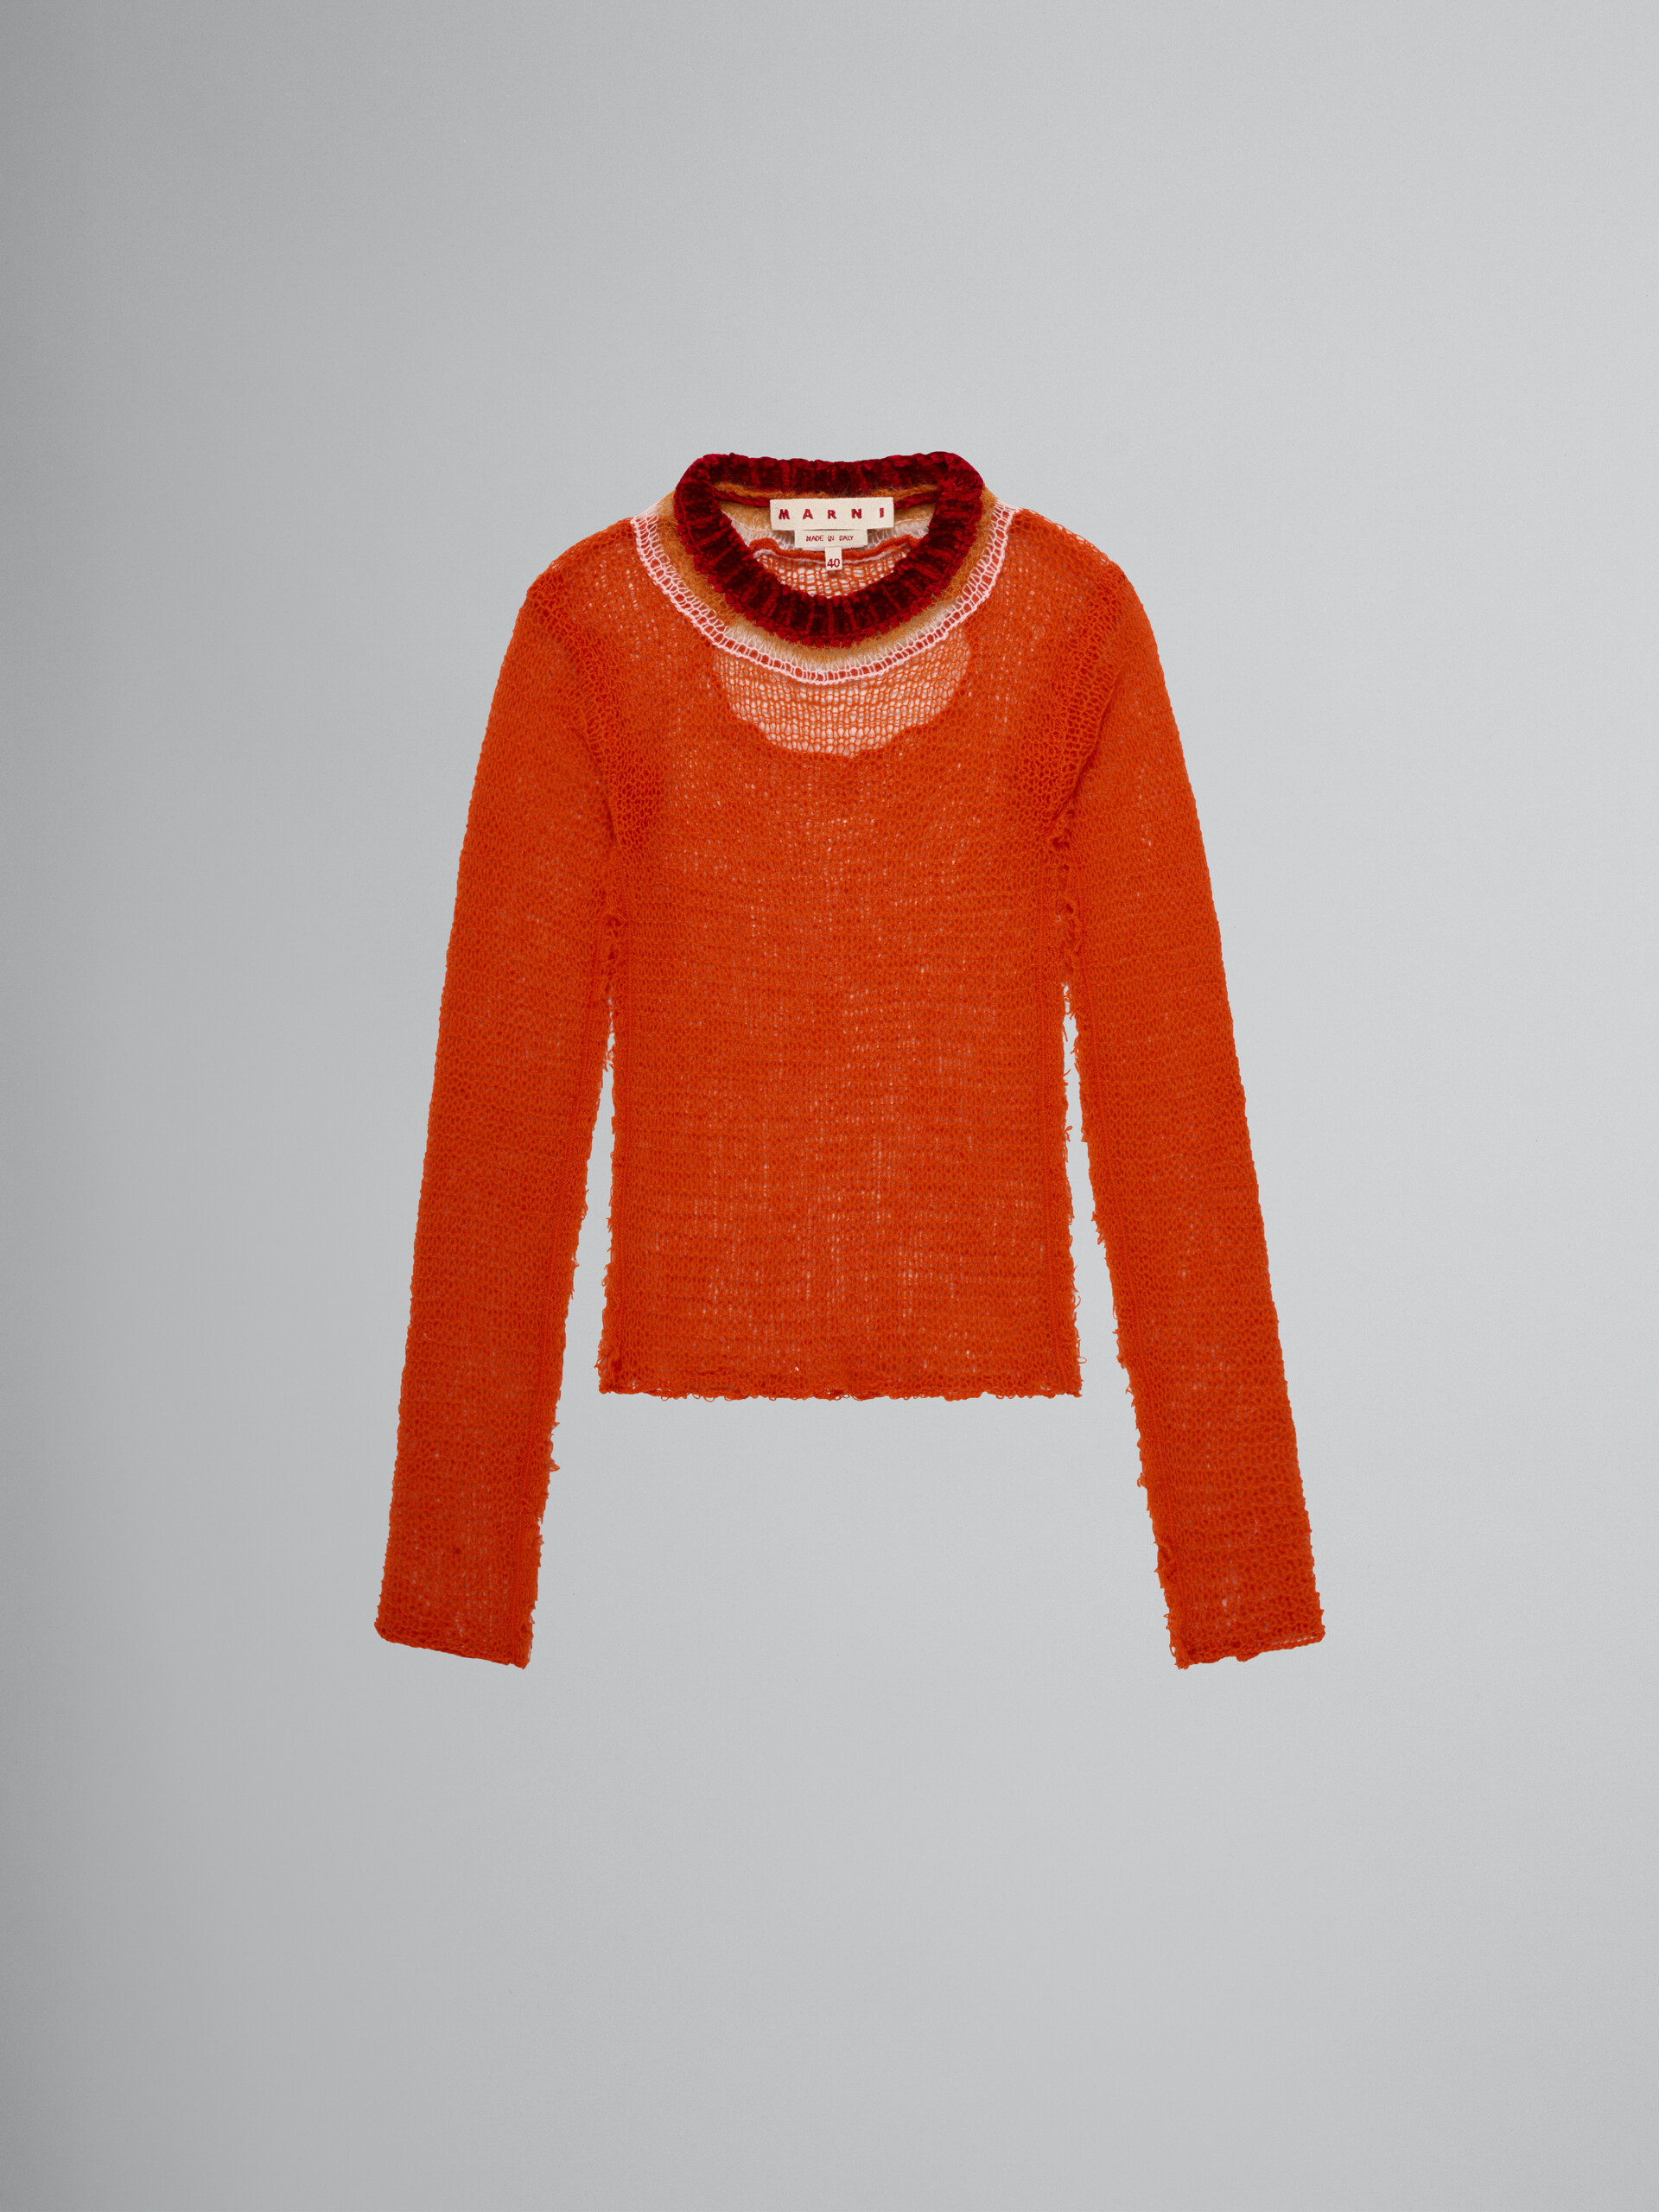 Jersey naranja de malla de cachemira y lana con recorte - jerseys - Image 1